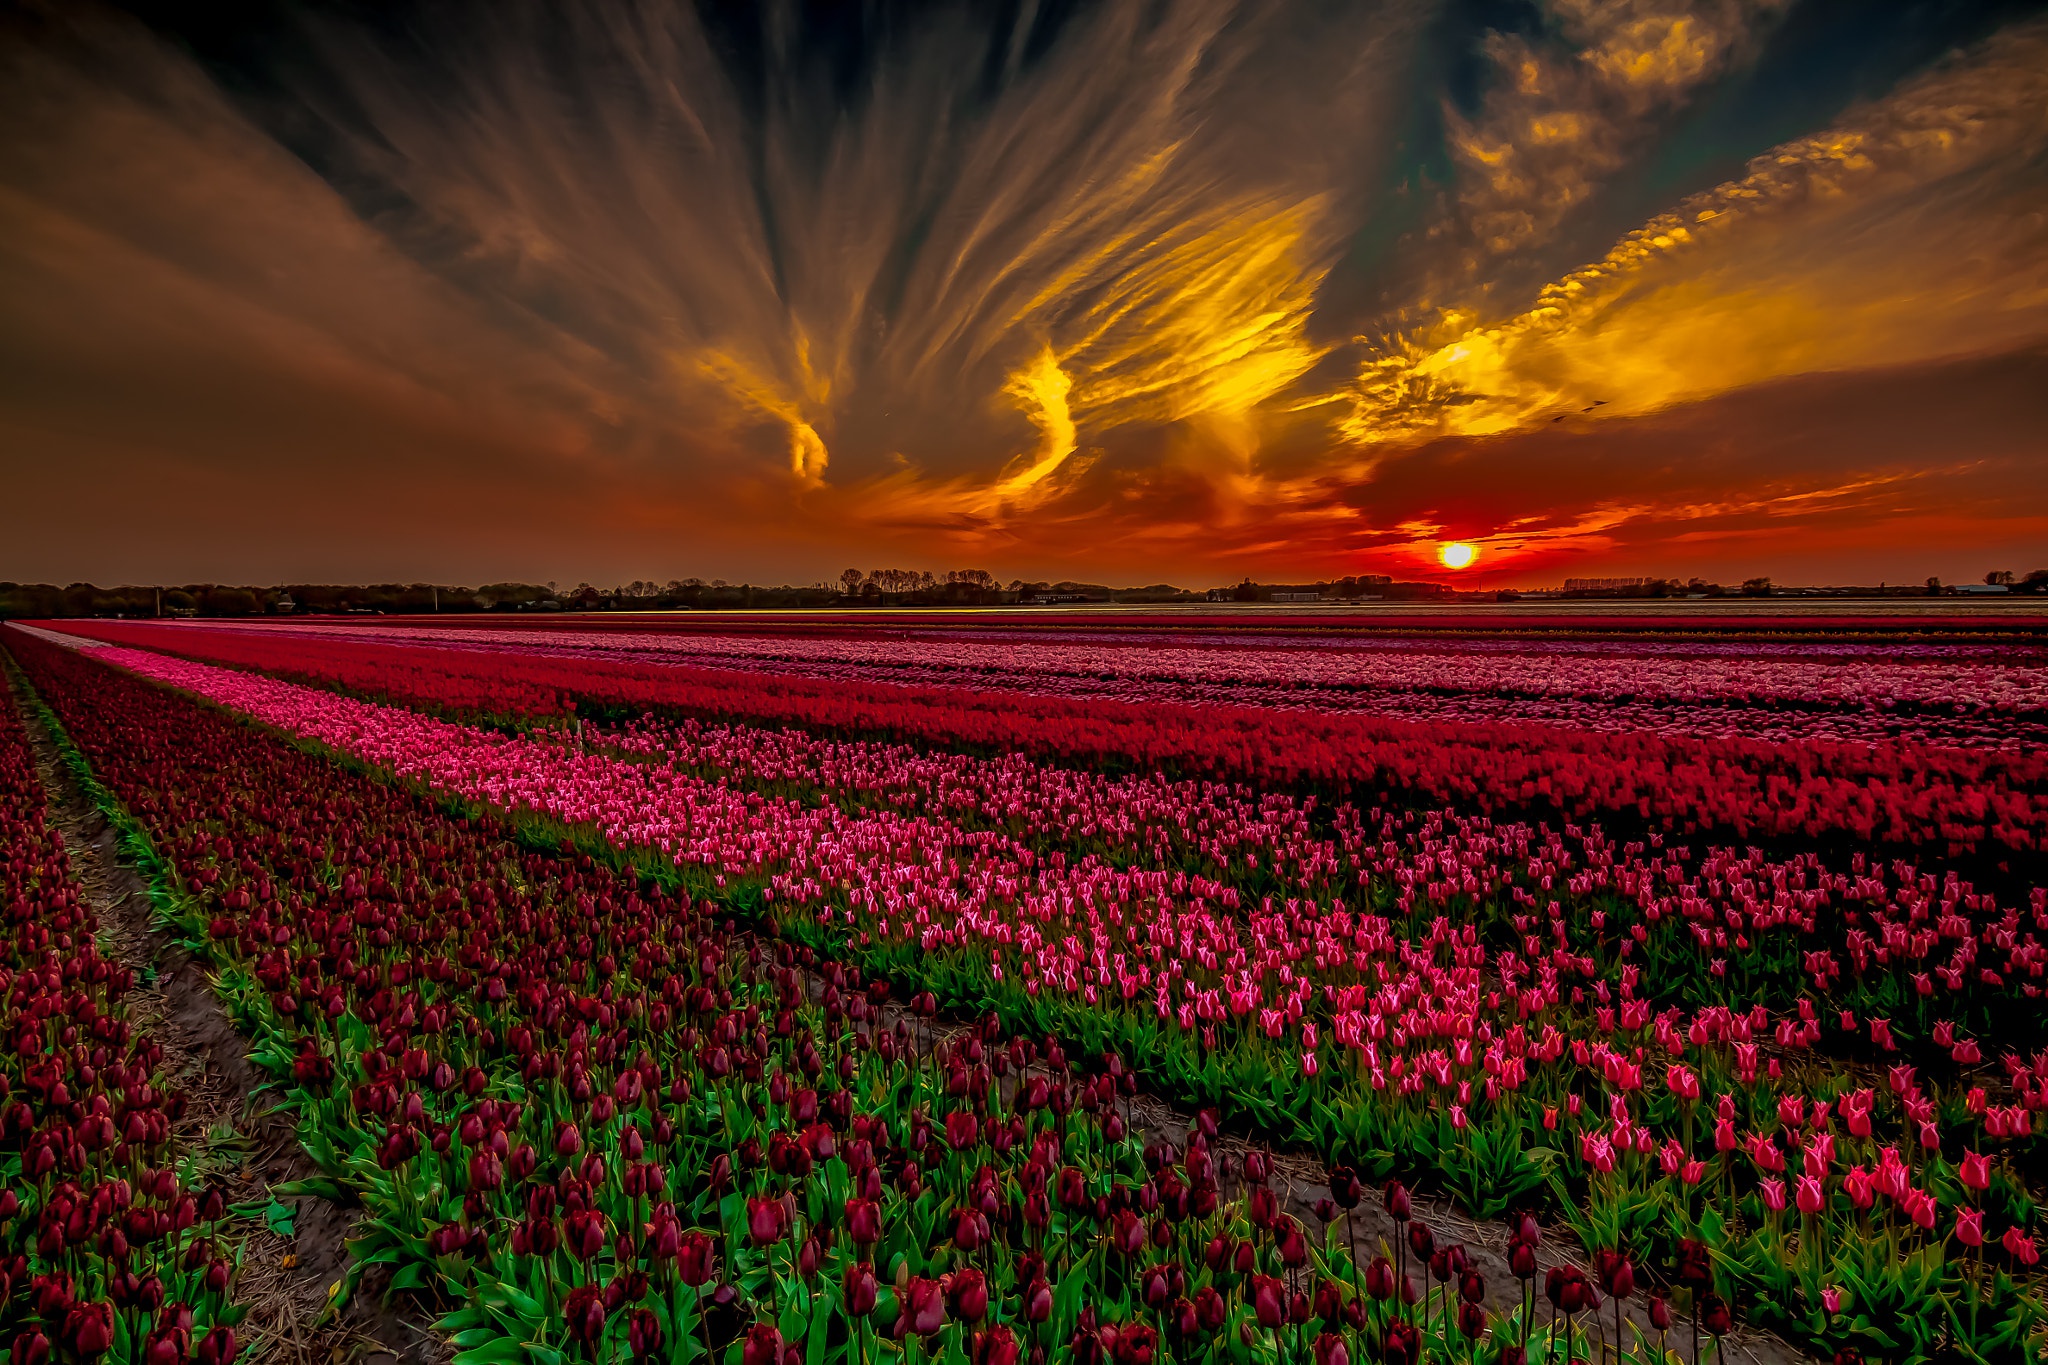 природа, цветы, тюльпаны, закат, поле, вечер, облака, зарево, солнце, красивый пейзаж, nature, flowers, tulips, sunset, field, evening, clouds, glow, sun, beautiful landscape